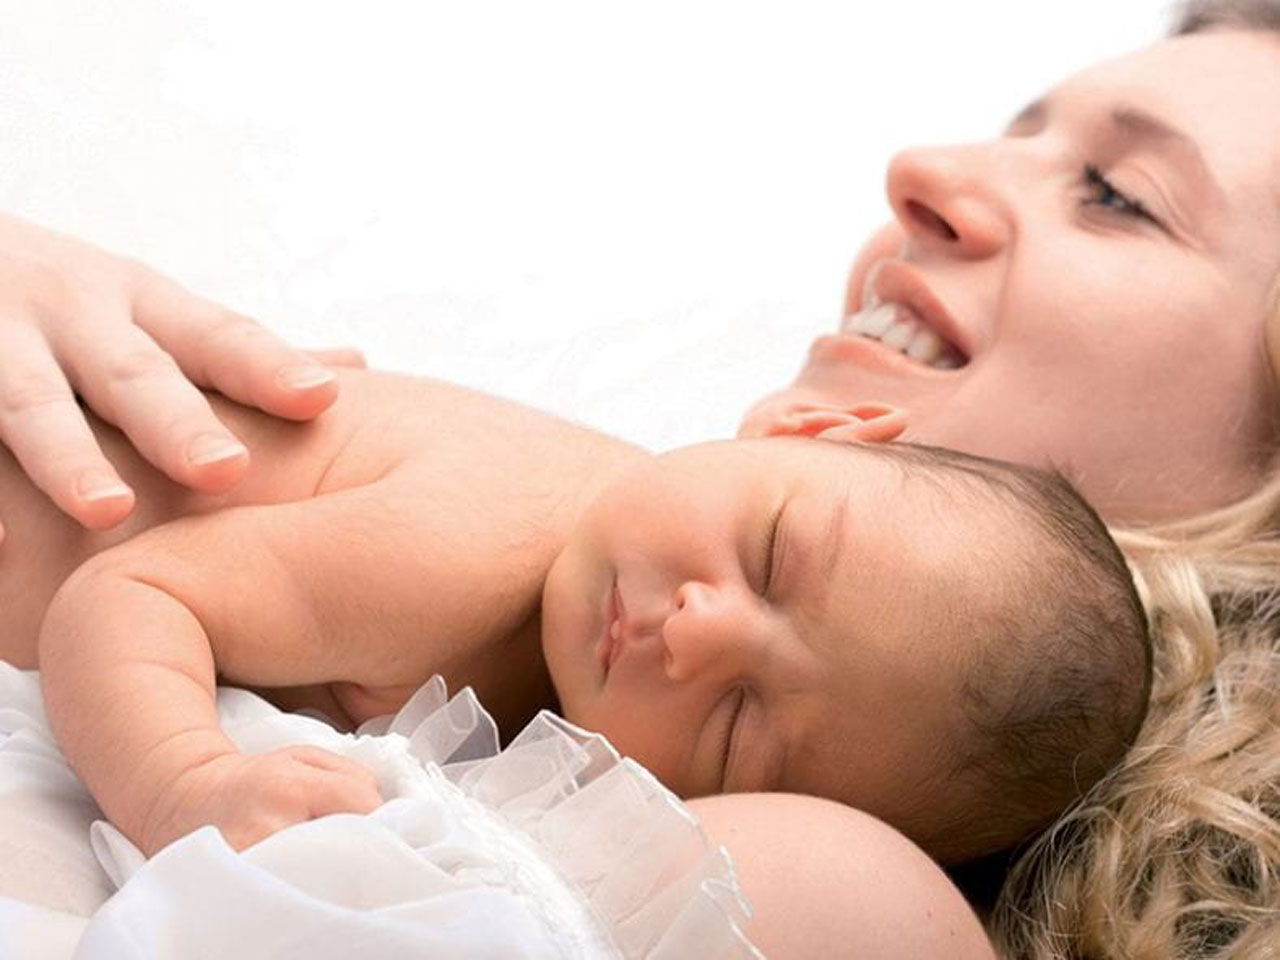 bebeklerde hirilti oksuruk neden olur tehlikeli mi hirilti nasil gecer